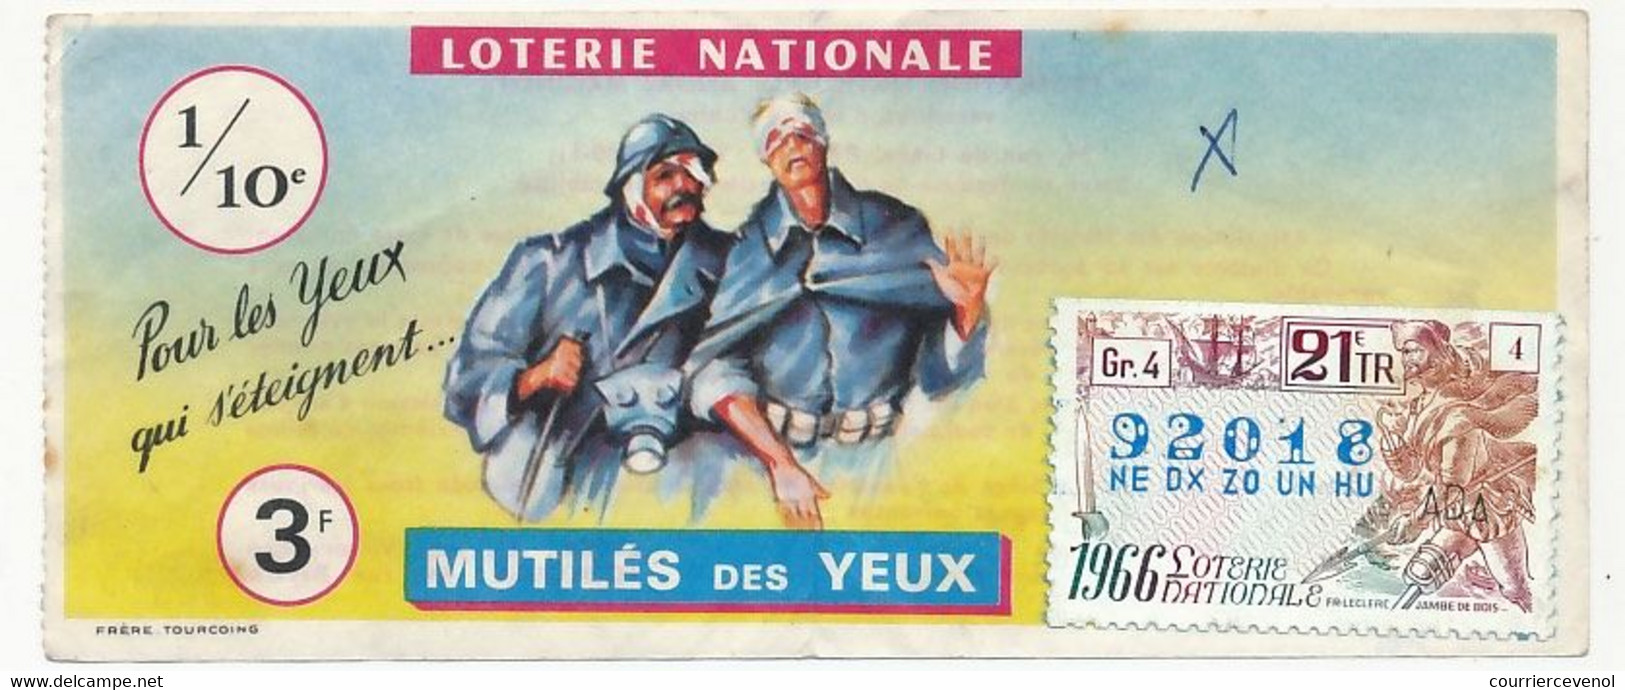 FRANCE - Loterie Nationale - 1/10ème - Mutilés Des Yeux - 21eme Tranche 1966 - Loterijbiljetten